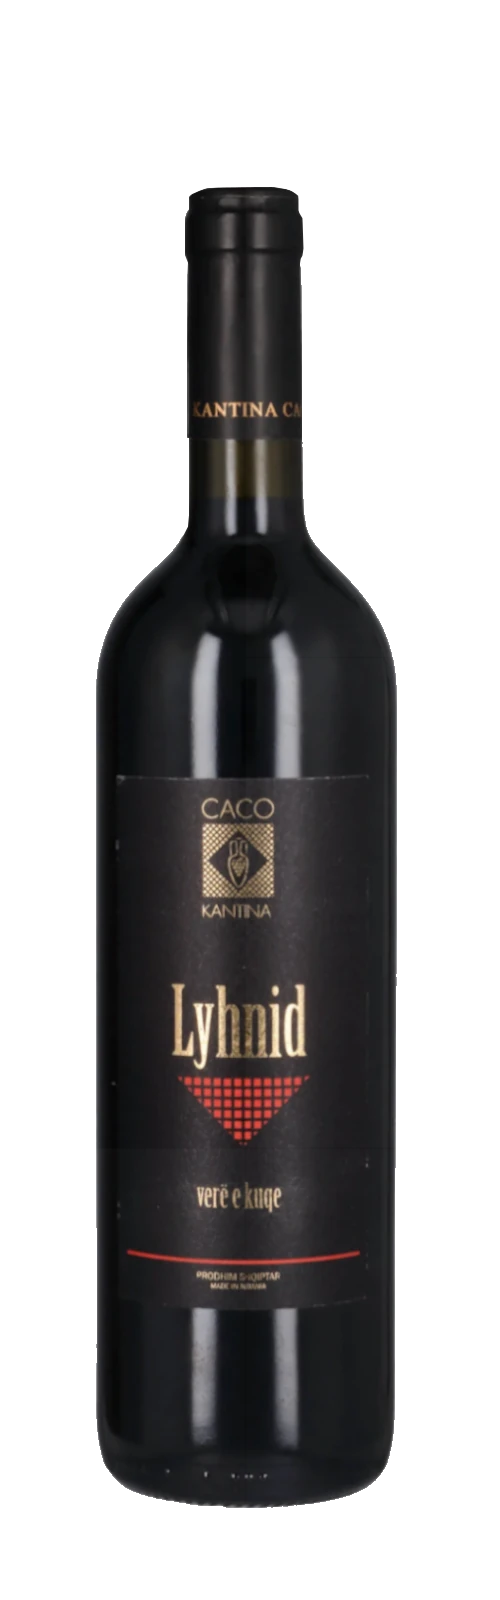 Lyhnid i kuq 2019 -  13% vol. - CACO Winery